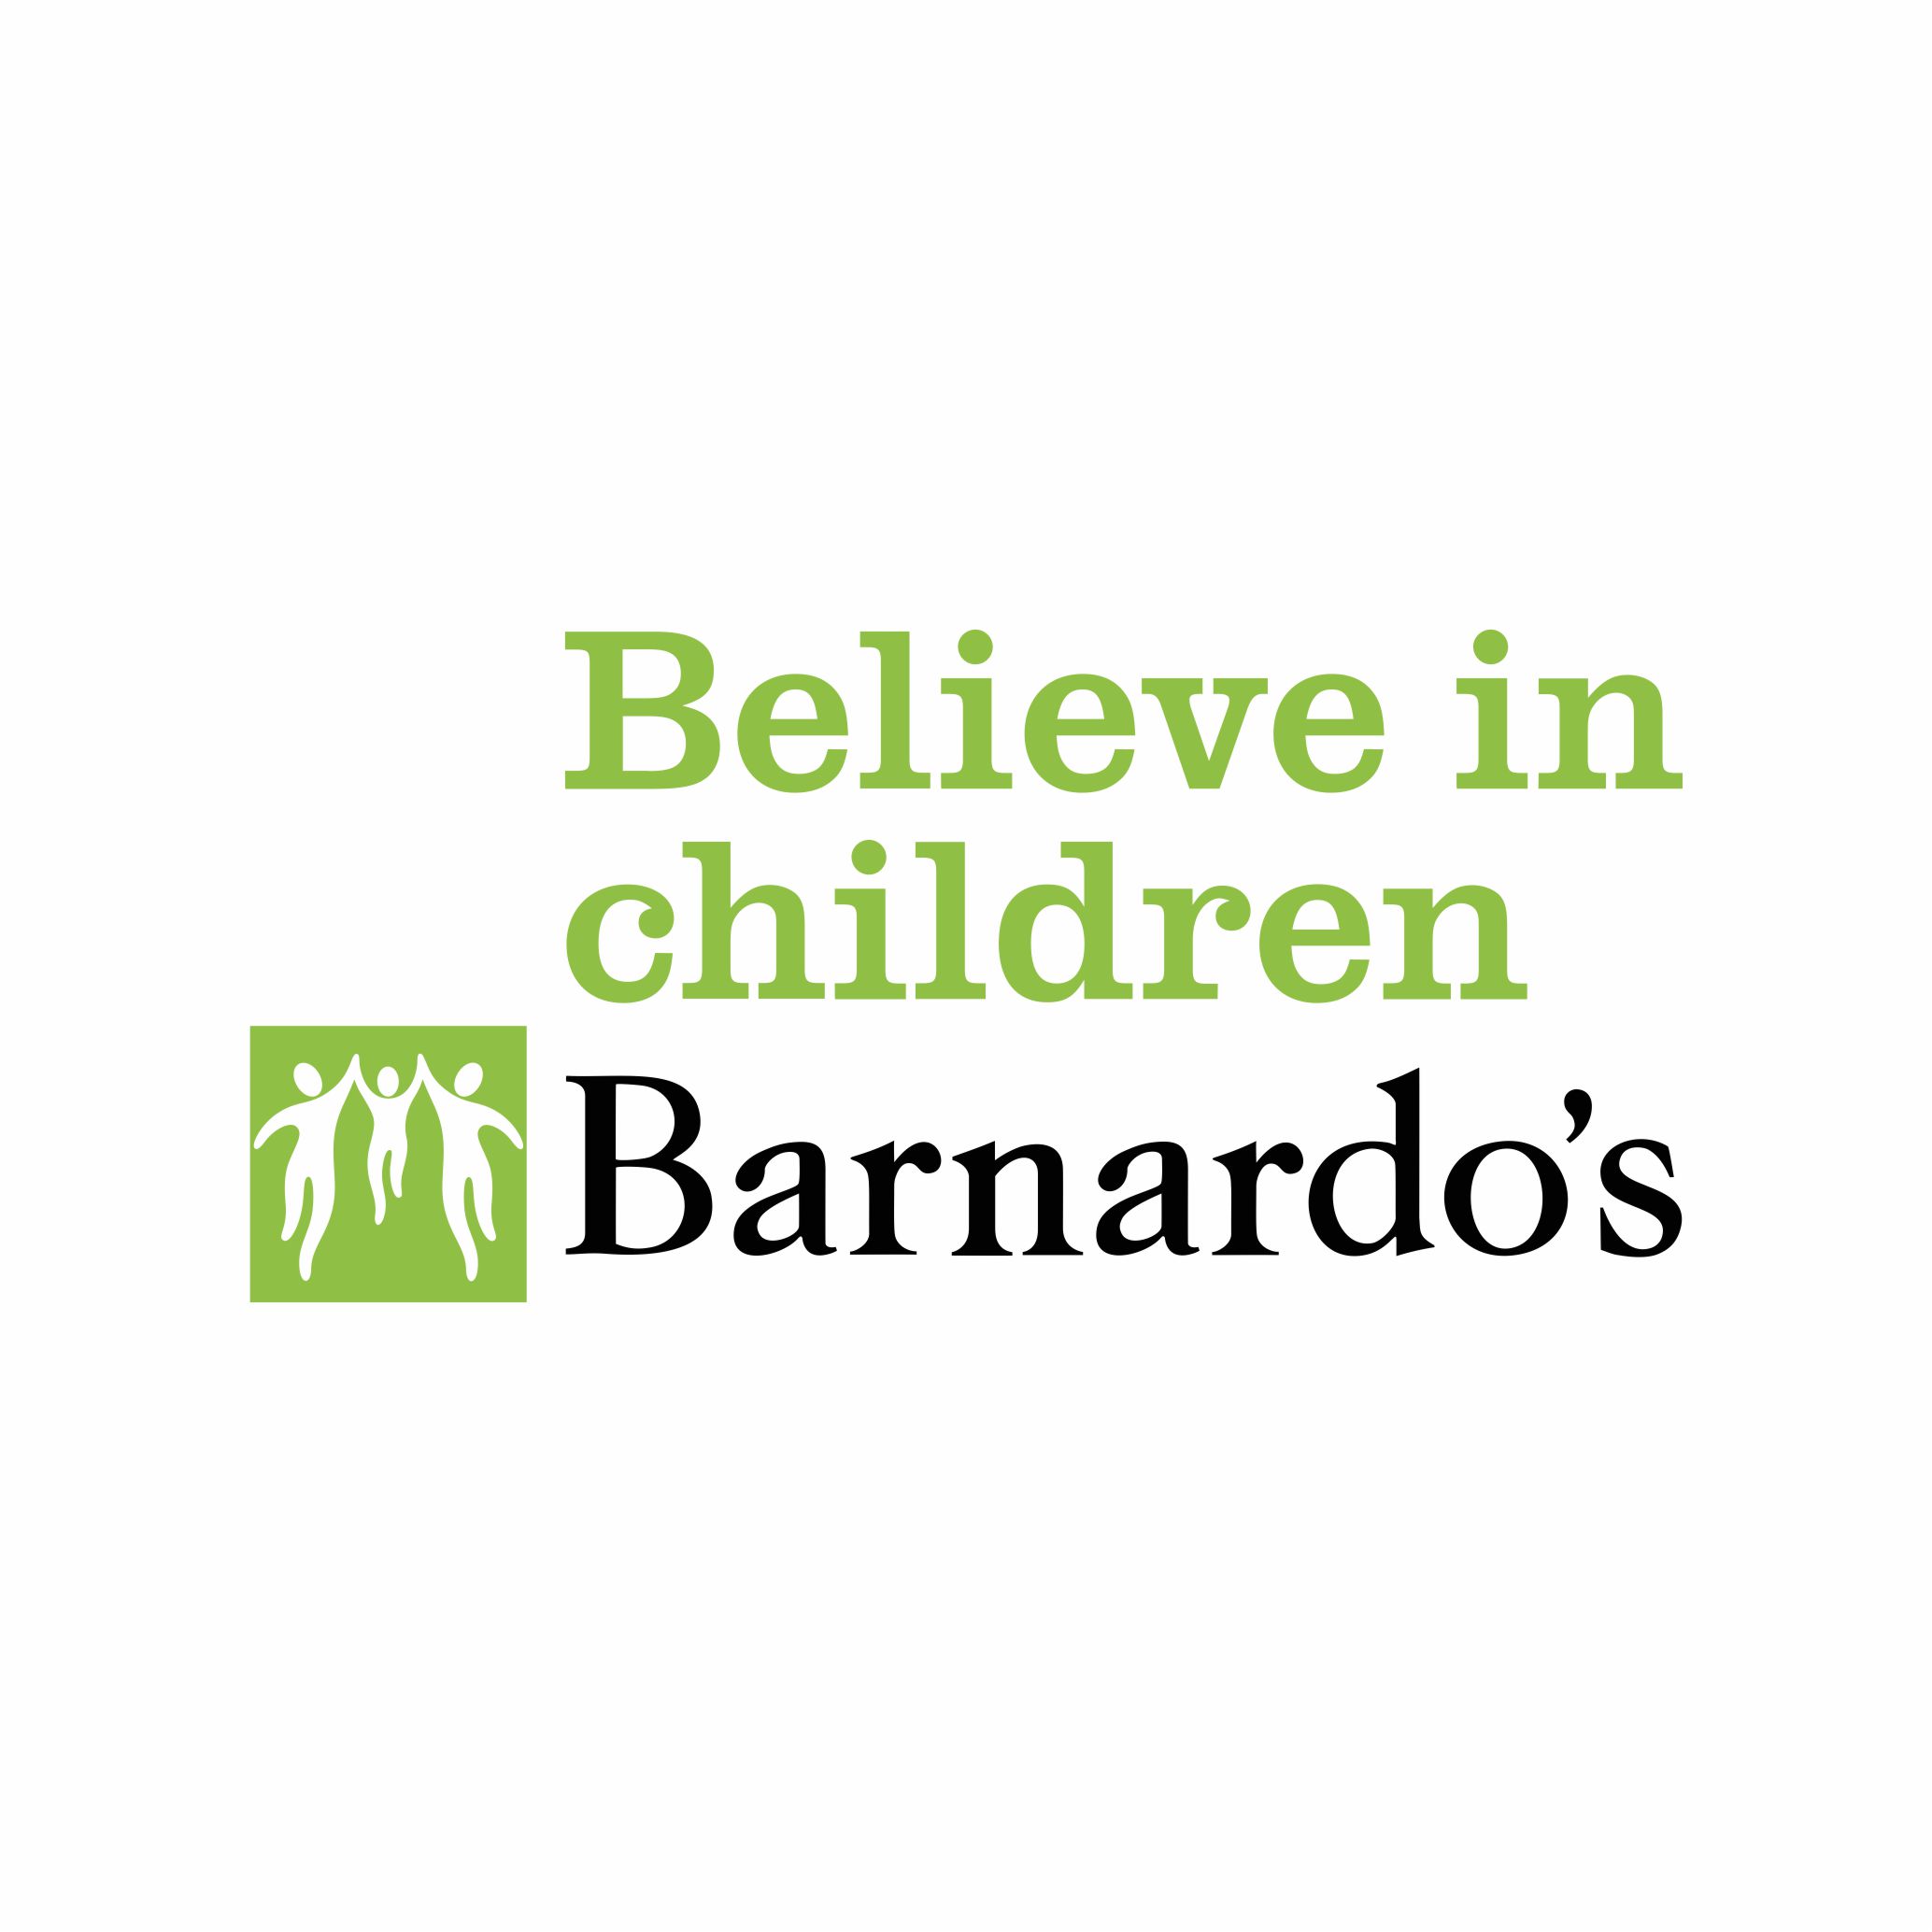 https://regencyfm.com/wp-content/uploads/2022/05/barnardos-logo.jpg